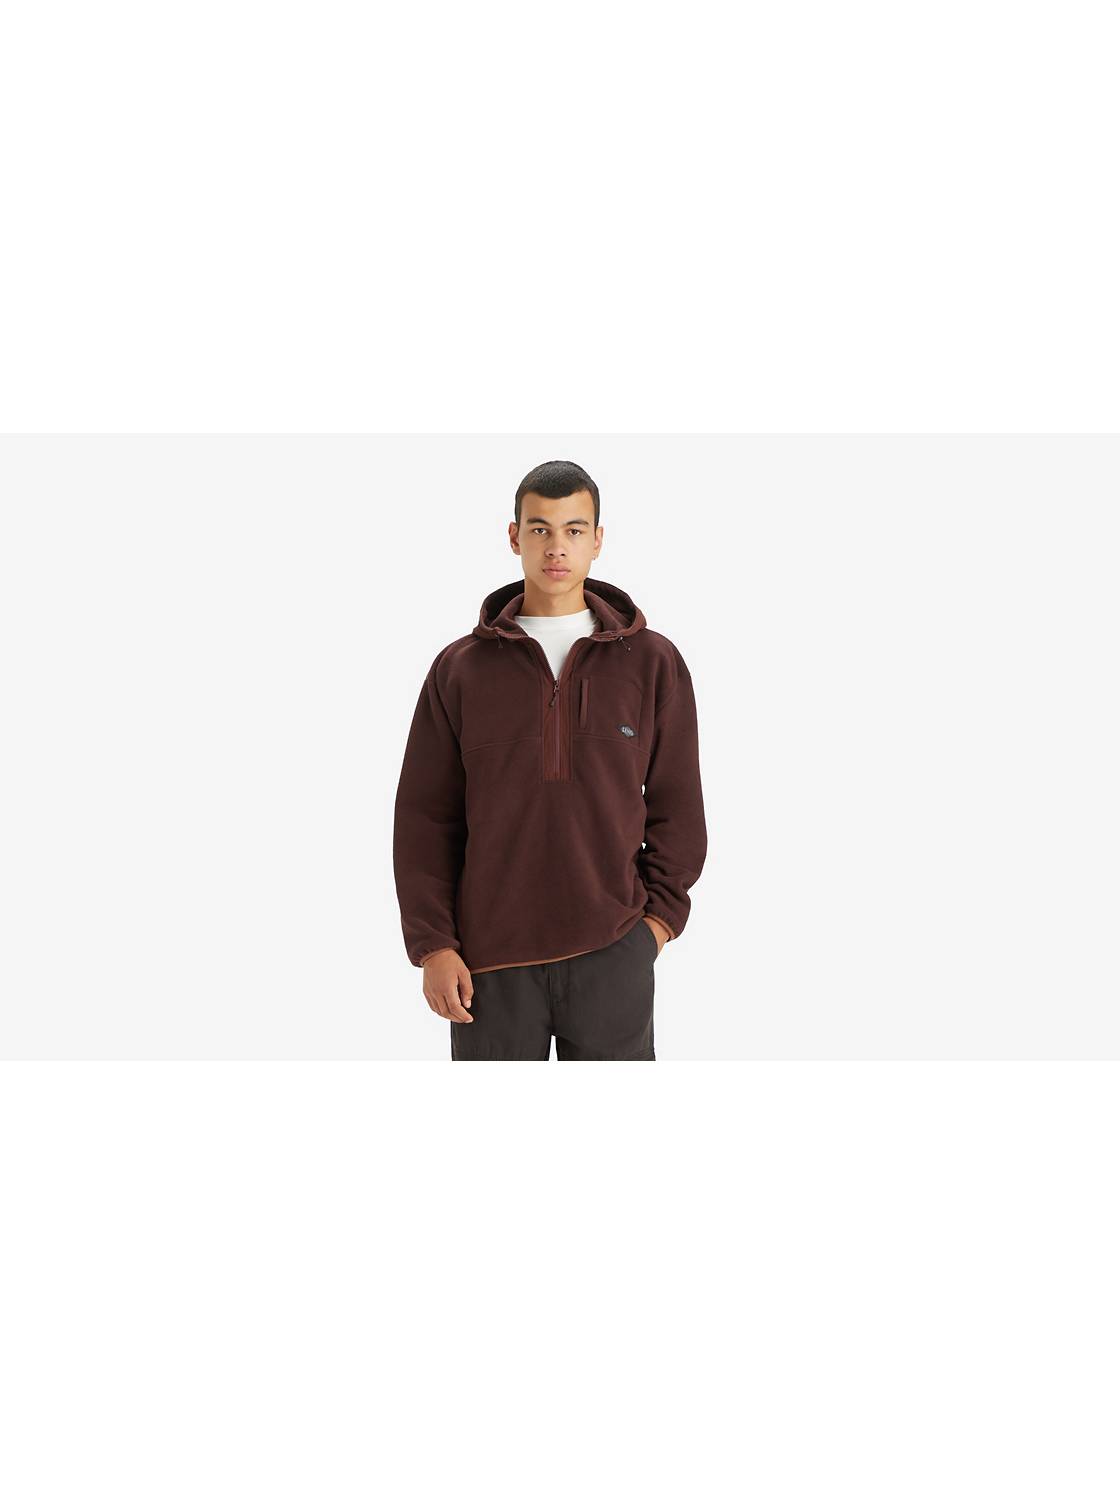 Orbit Half-Zip Sweatshirt 1